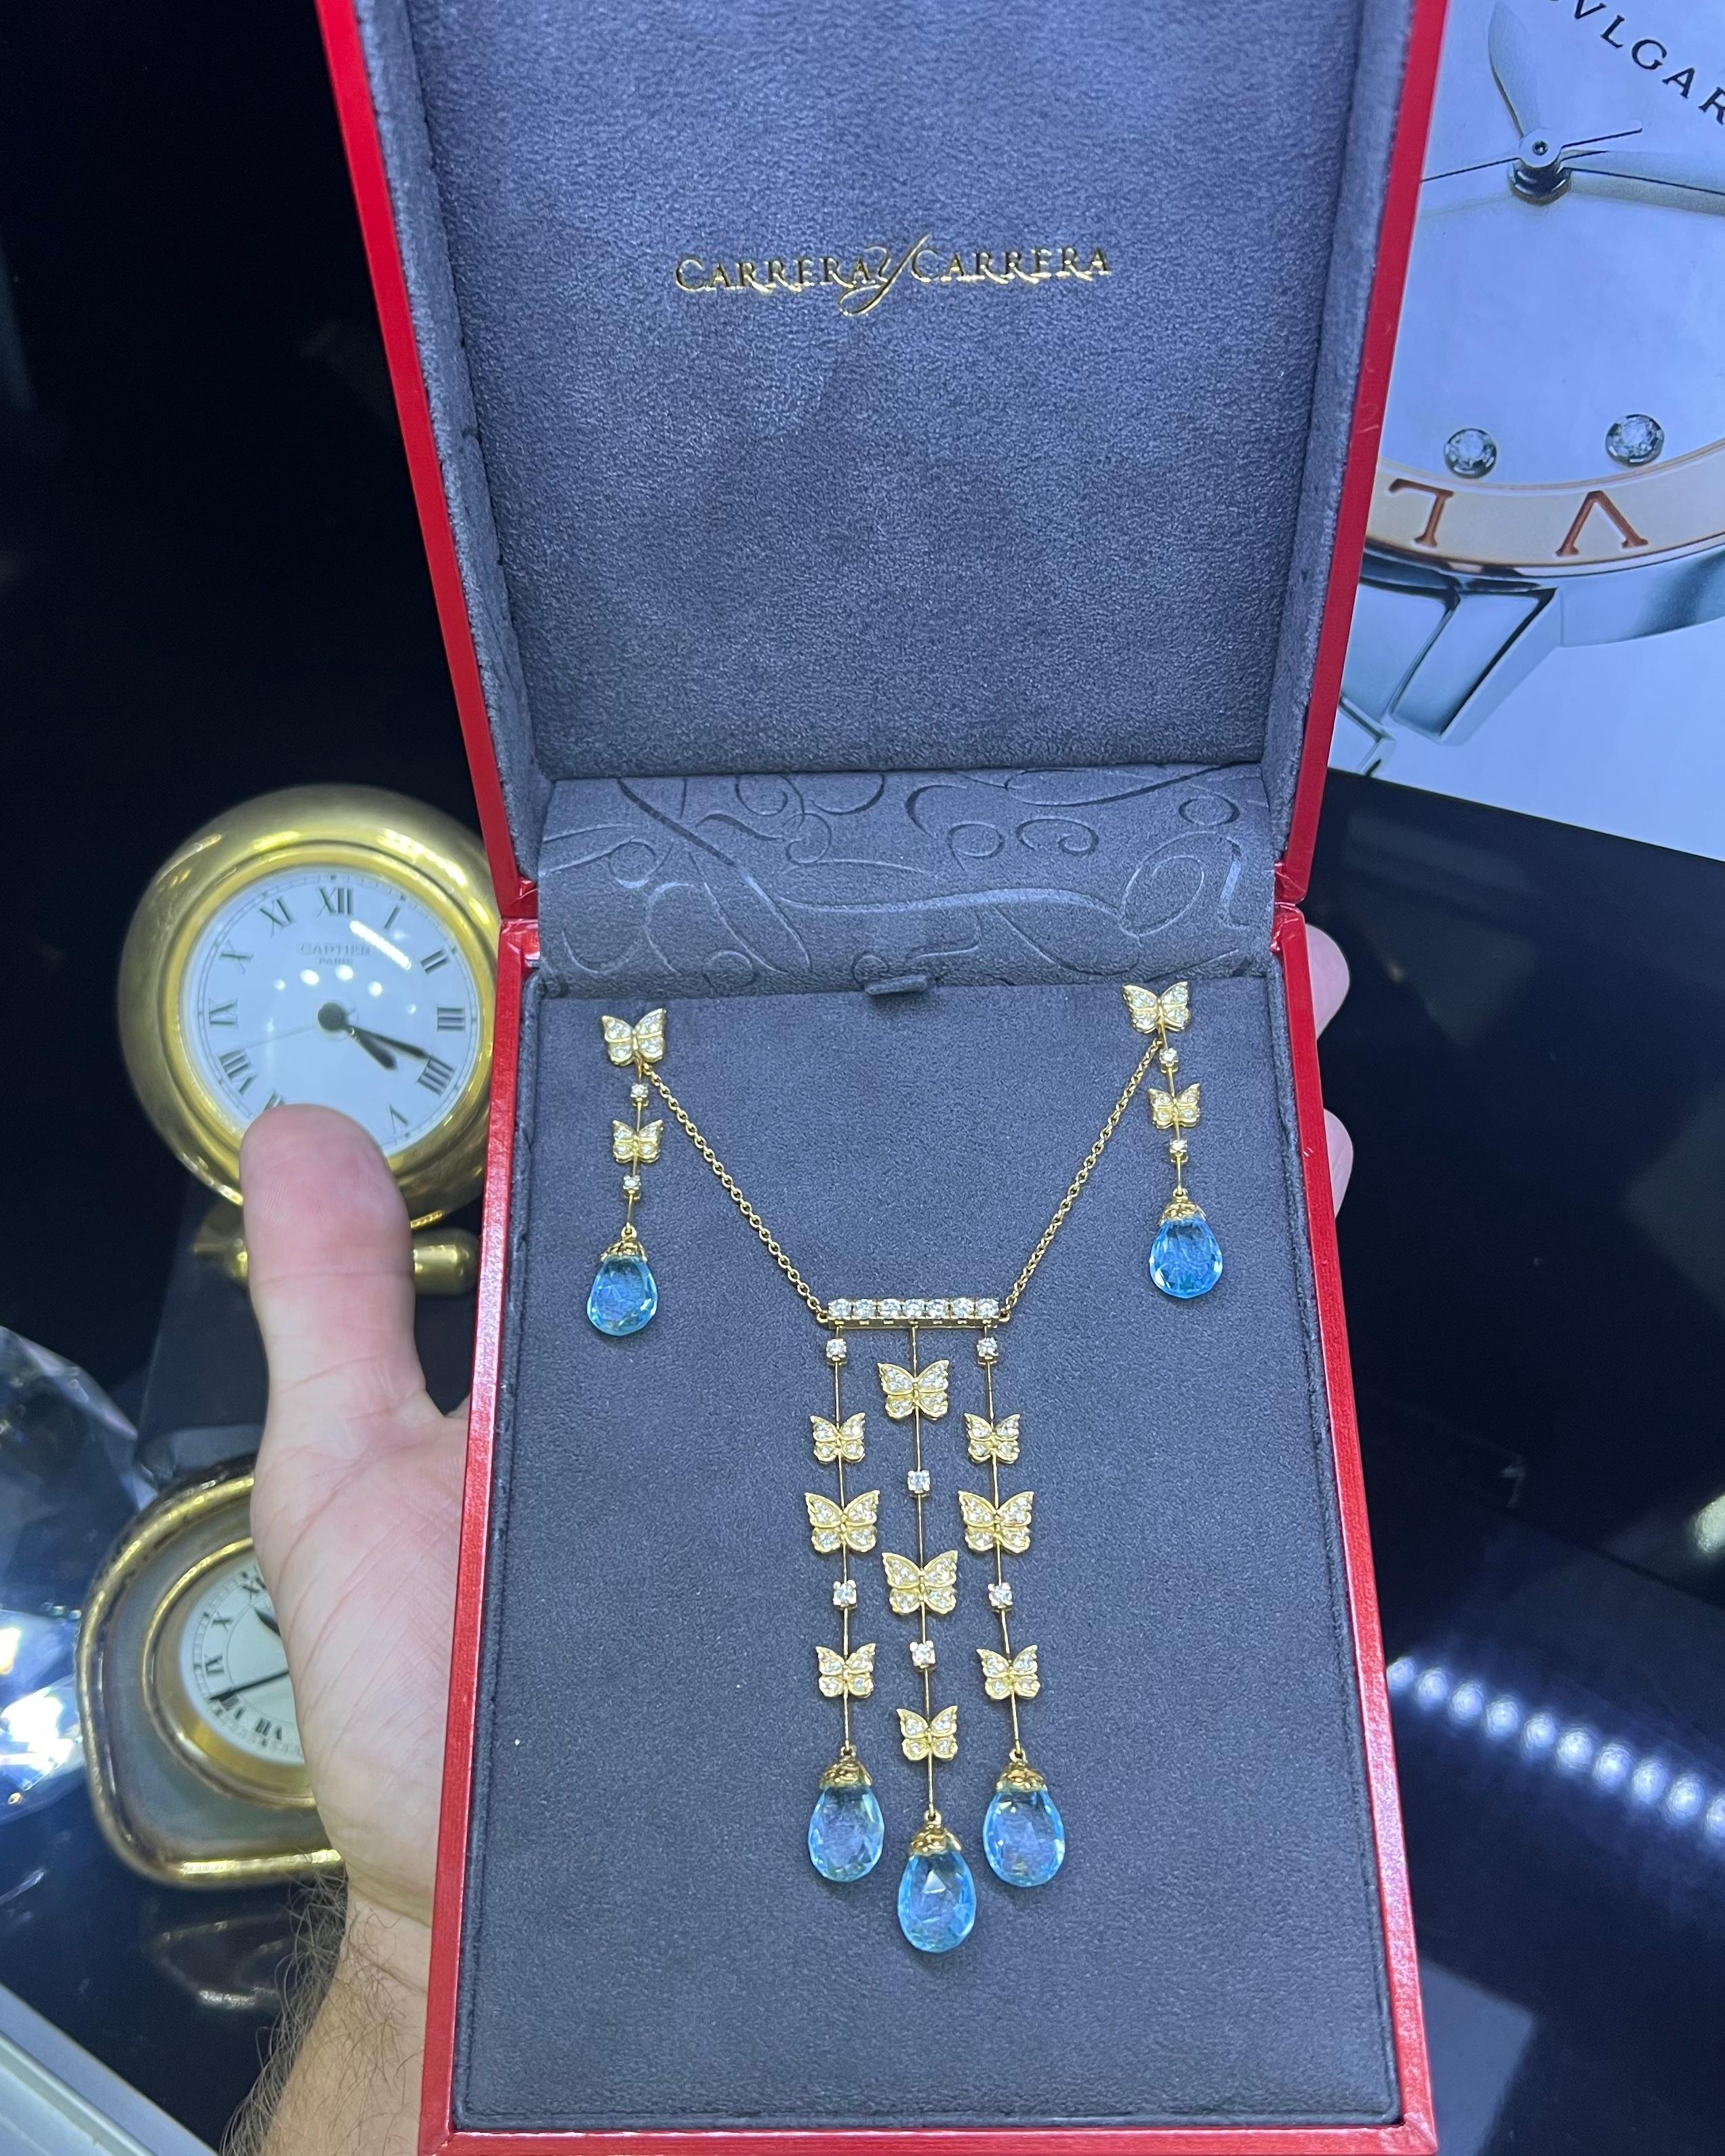 Carrera Y Carrera Baile Mariposa Butterfly Diamond Topaz 18k Necklace & Earrings For Sale 2